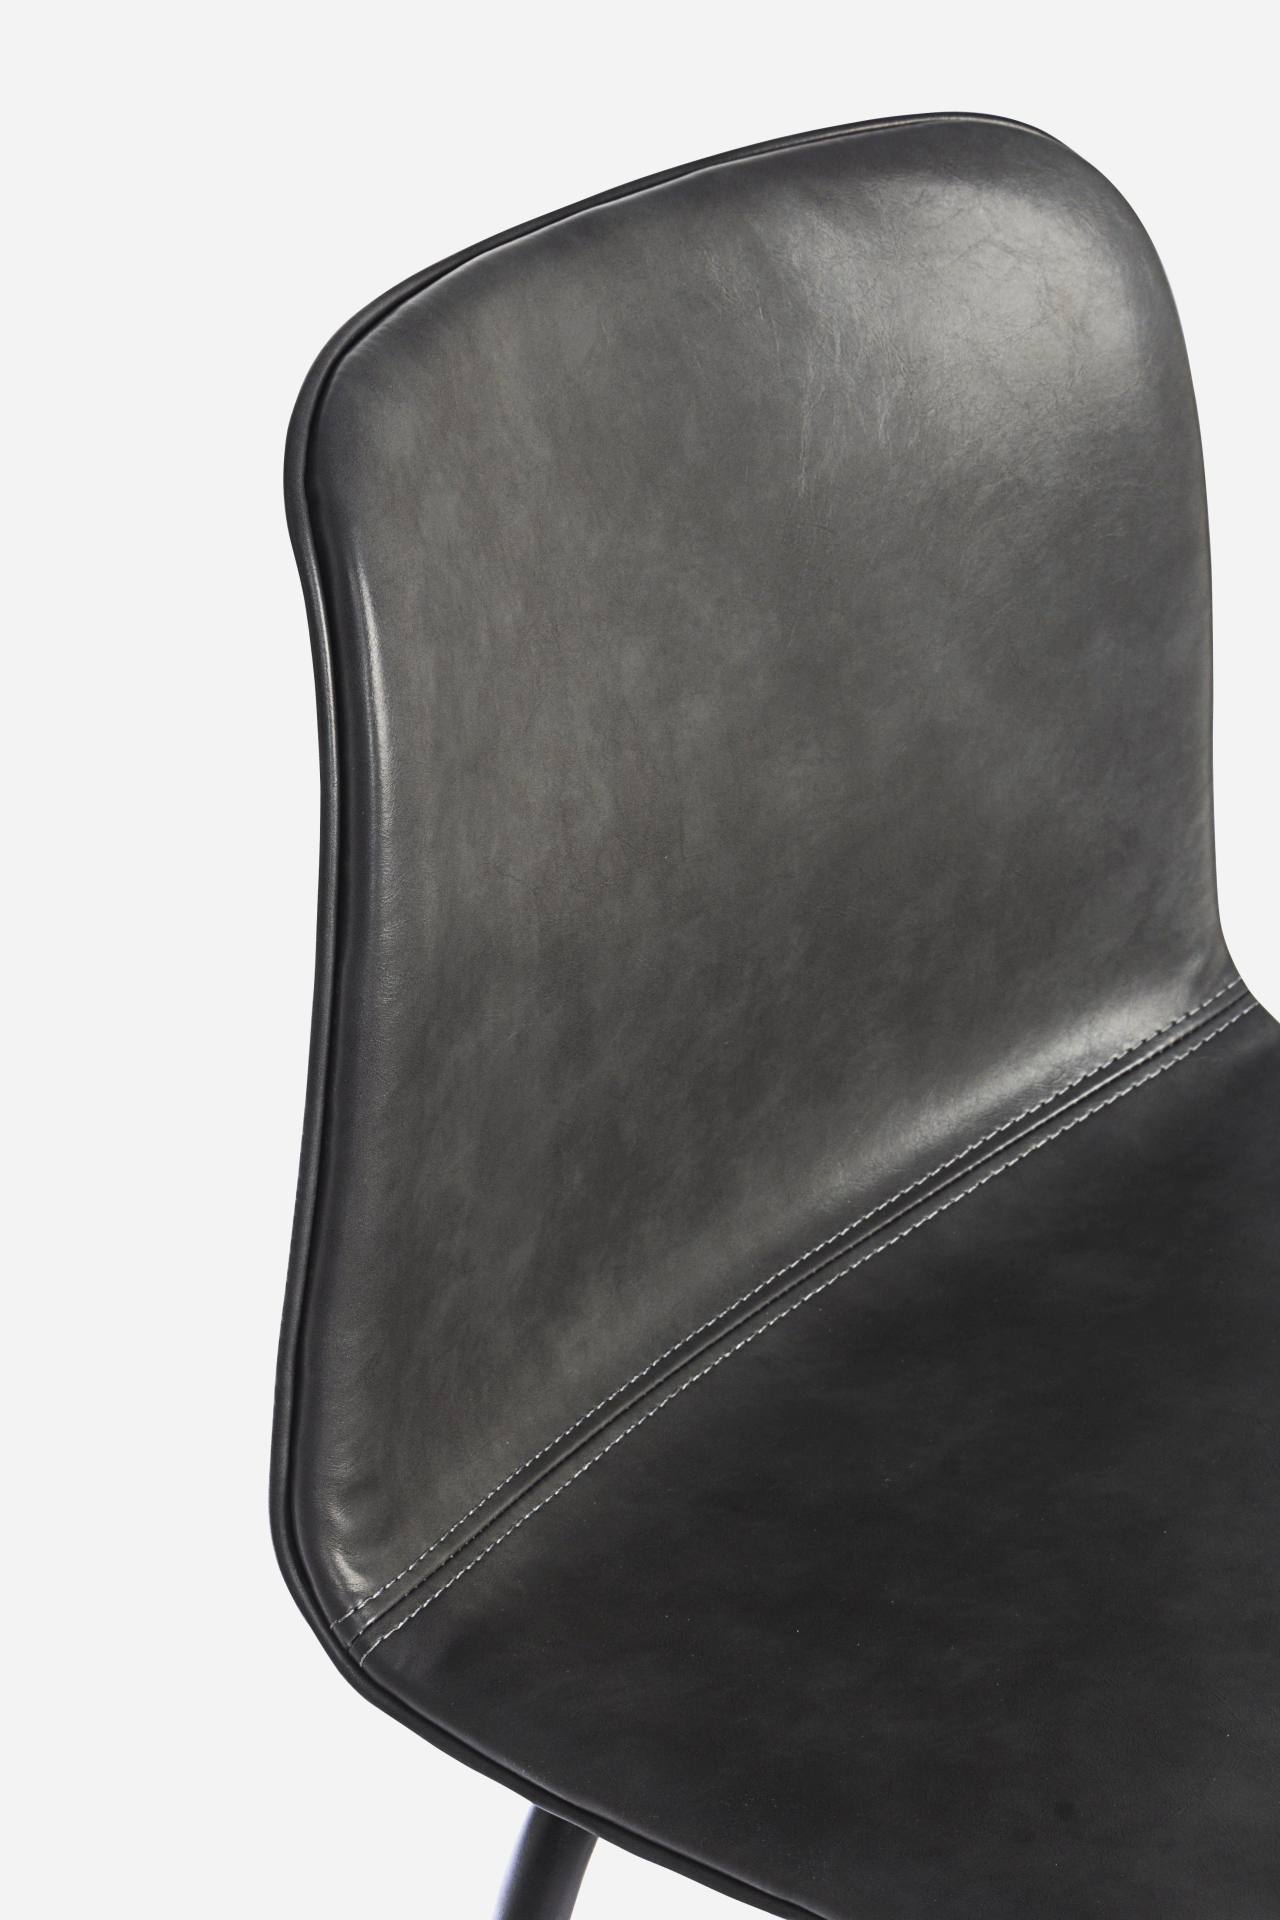 Der Barhocker Kyra überzeugt mit seinem klassischen Design. Gefertigt wurde er aus Kunstleder, welches einen Anthrazit Farbton besitzt. Das Gestell ist aus Metall und hat eine schwarze Farbe. Die Sitzhöhe des Hockers beträgt 75 cm.